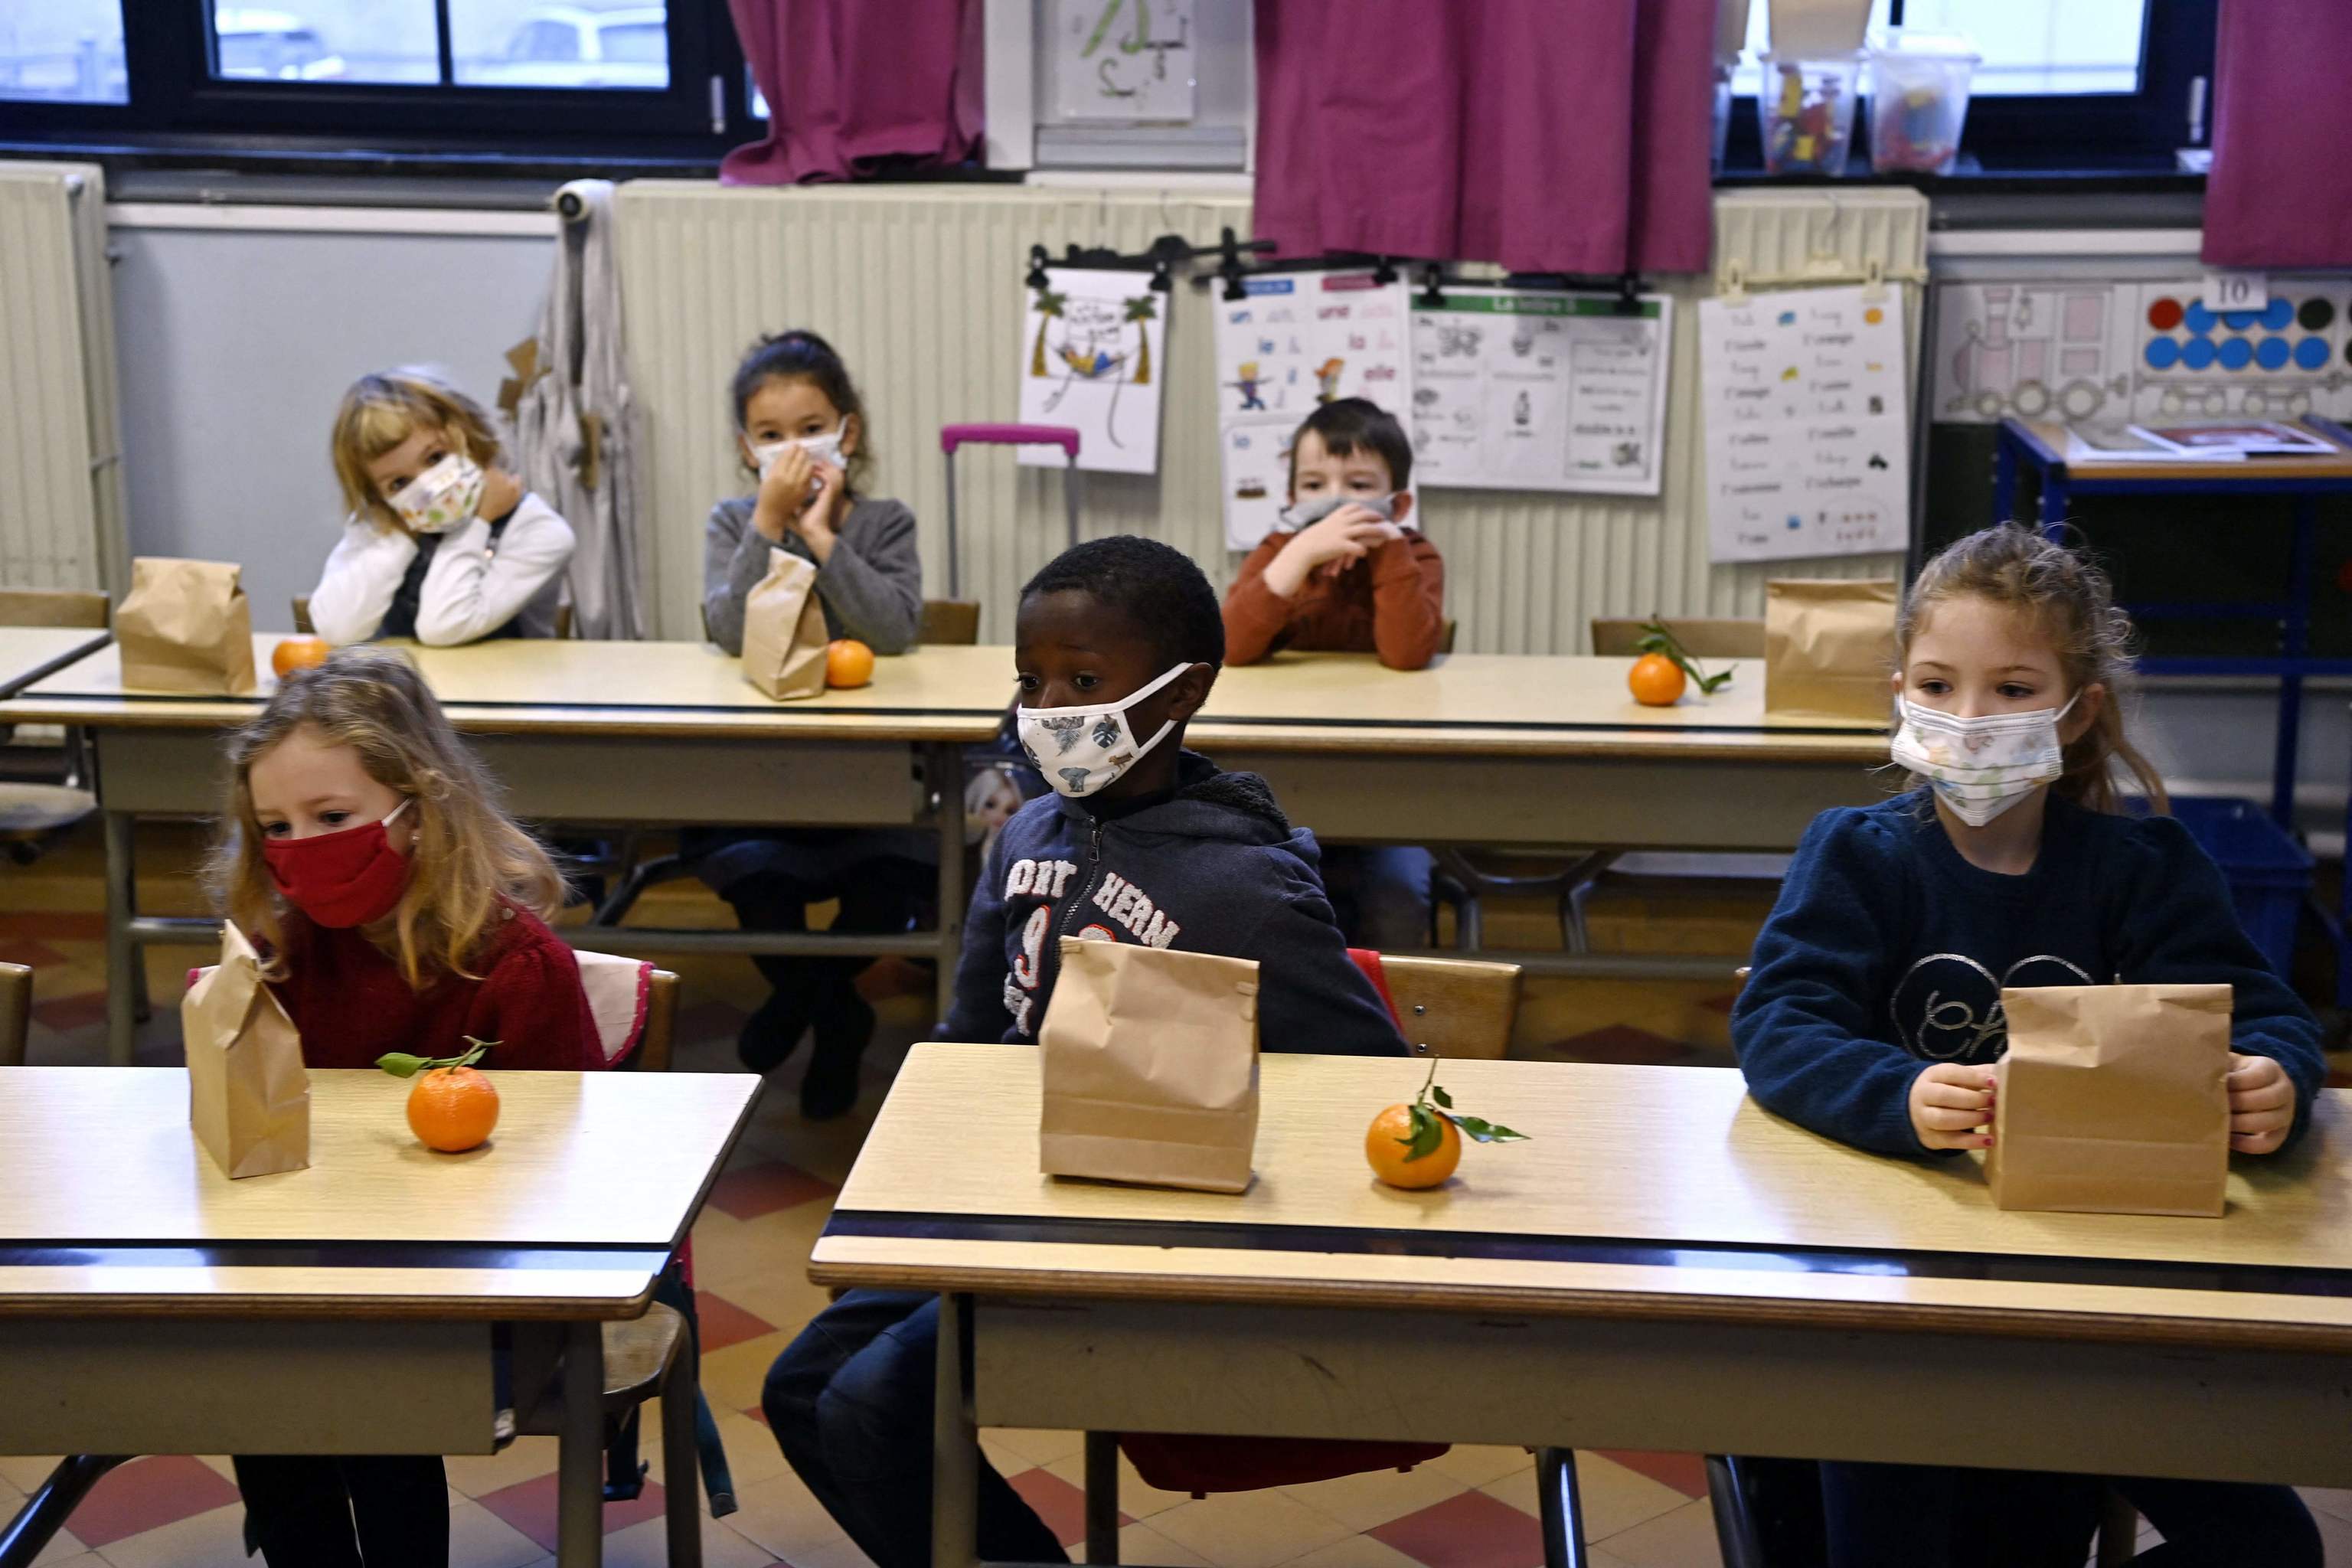 Los niños a partir de 6 años han llevado mascarilla desde diciembre en las aulas por la "dura ola de Covid de otoño".